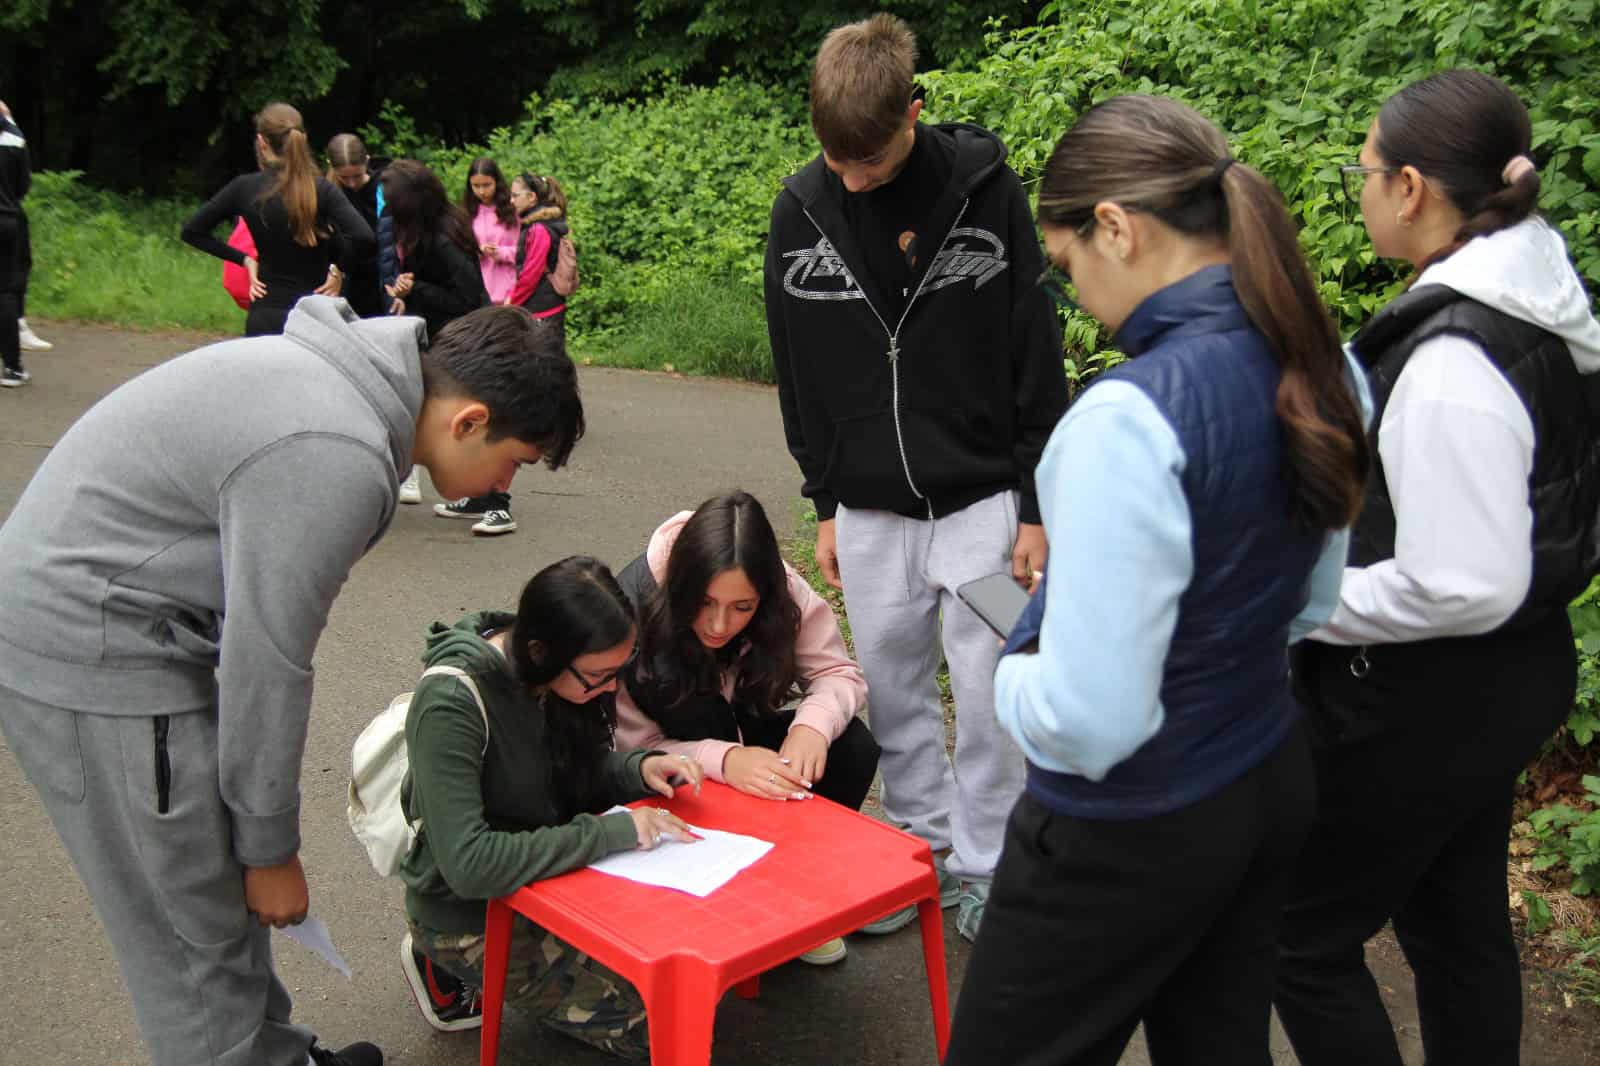 elevii au devenit "supraviețuitori în labirint" la un concurs ecologic desfășurat la mediaș